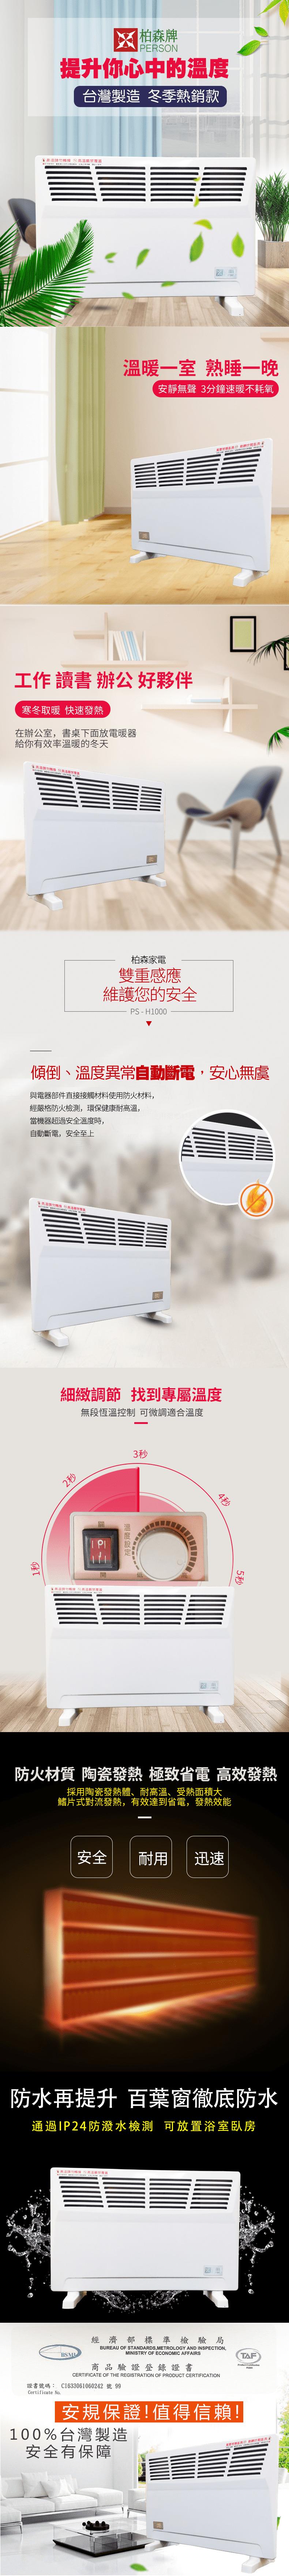 柏森牌鰭片式熱對流電暖器 PS-H1000